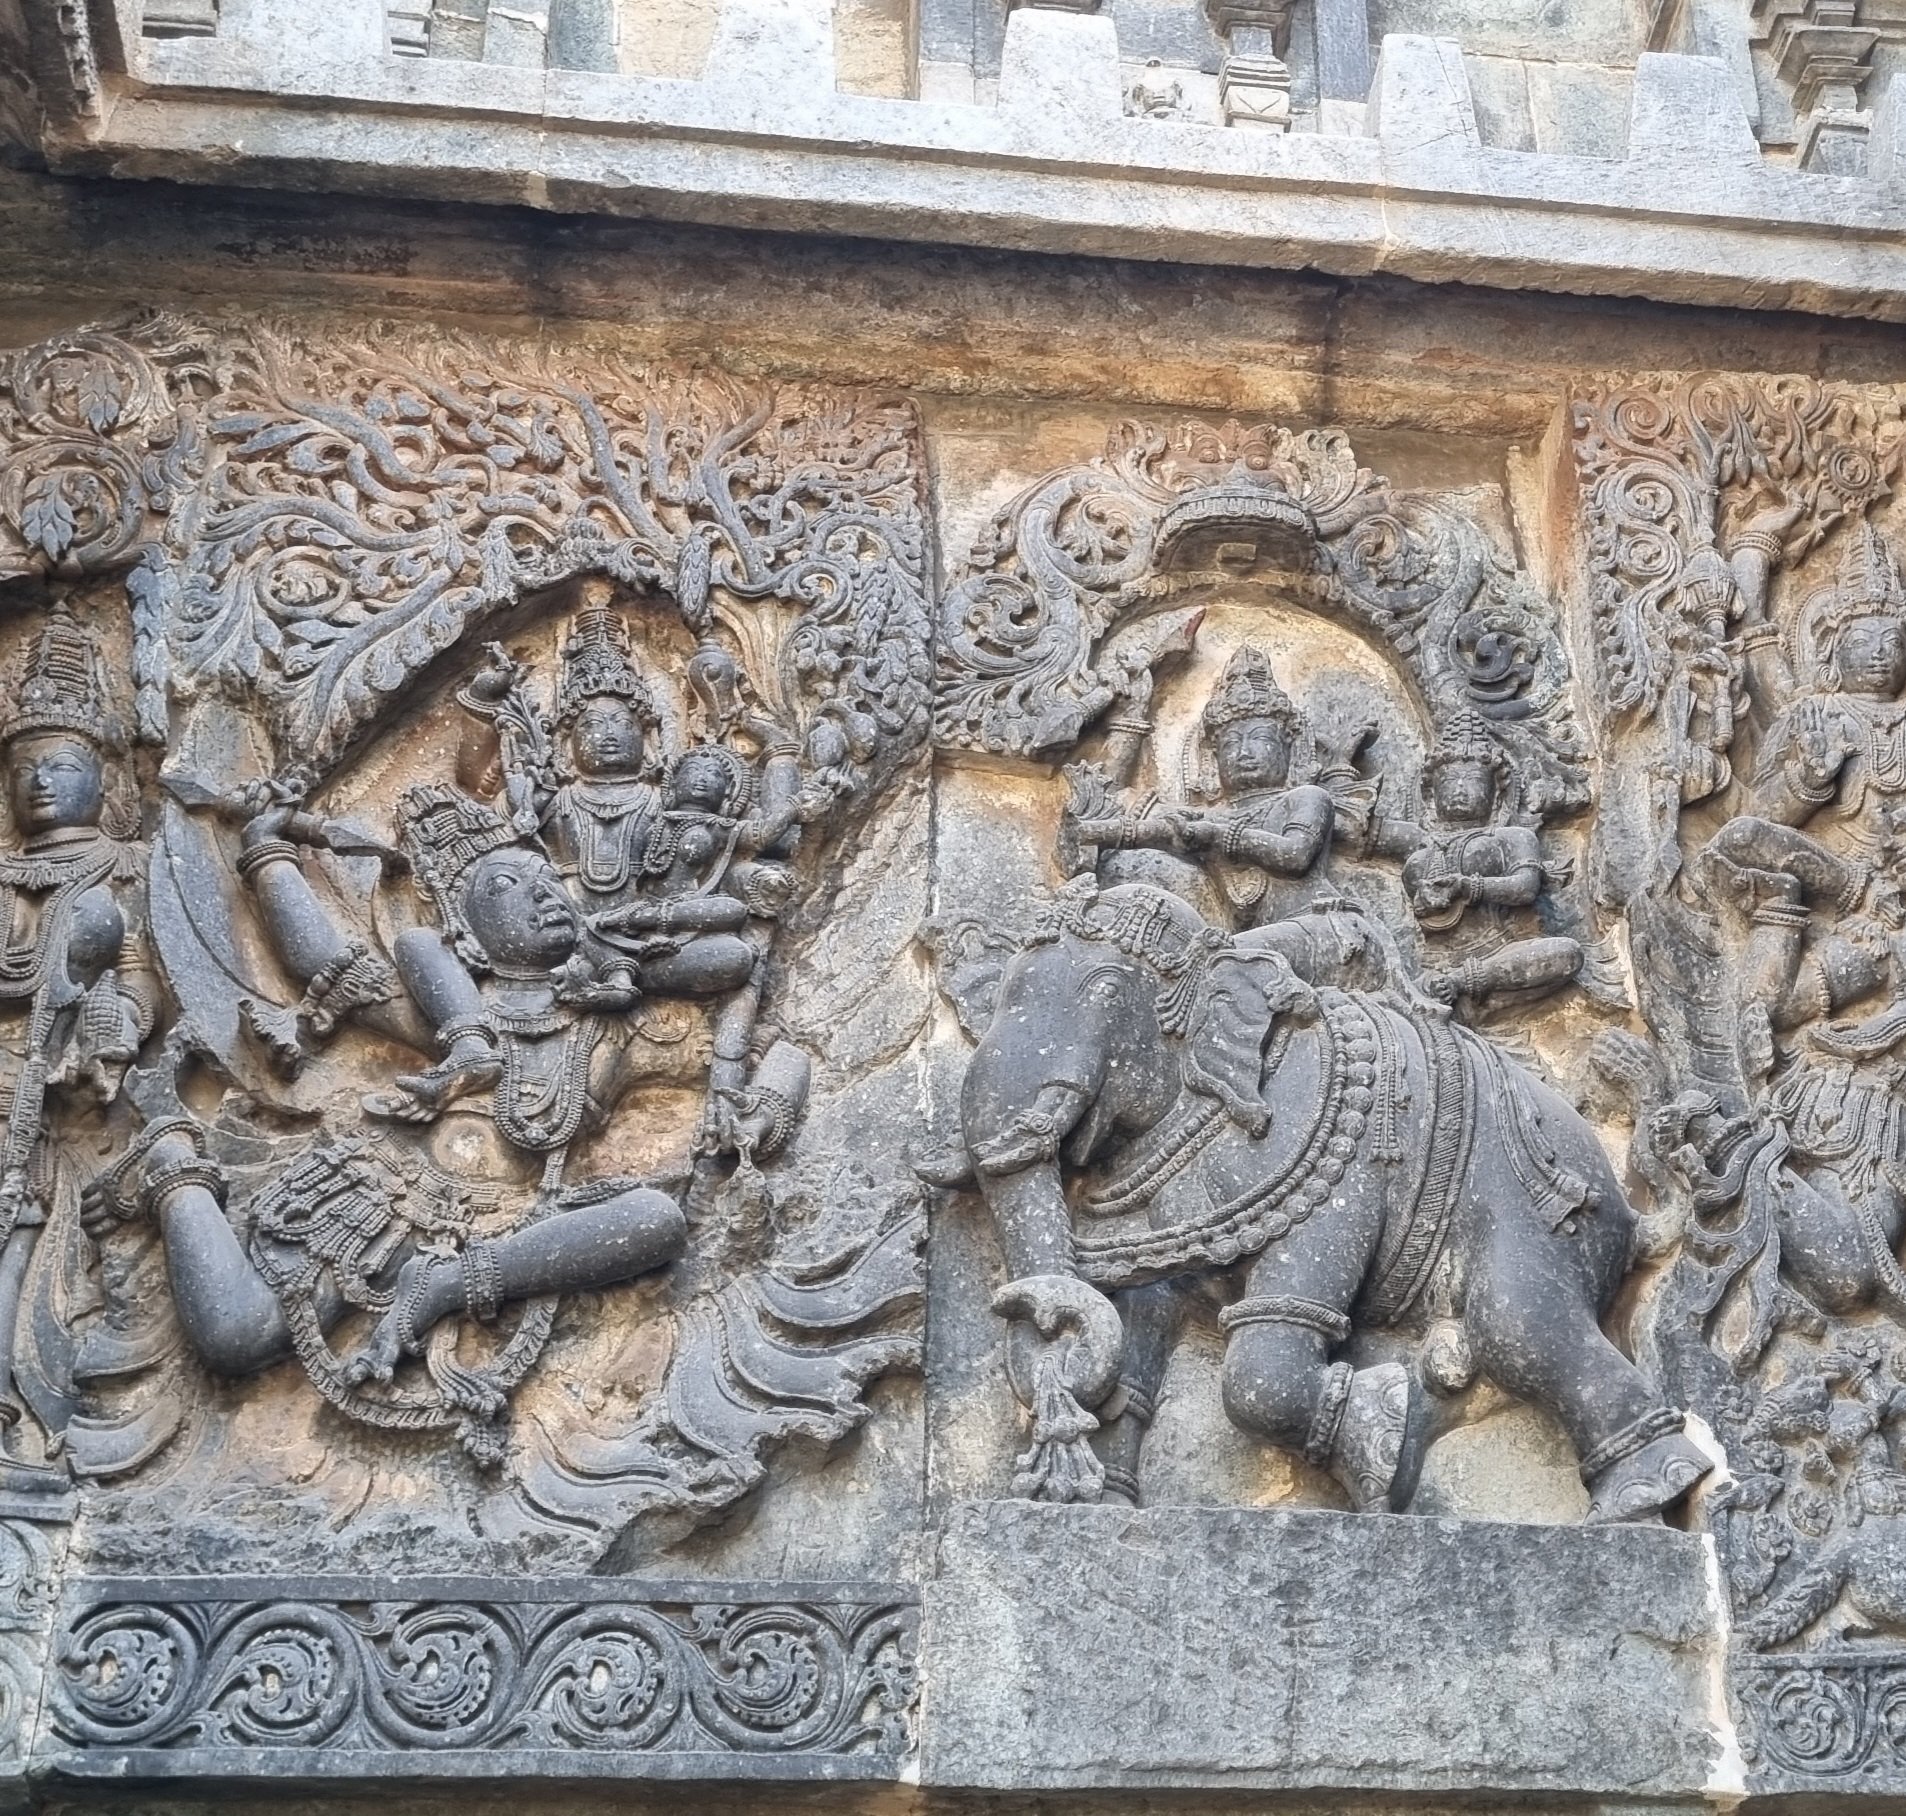 Indra, Vishnu, Airavat and Garuda.